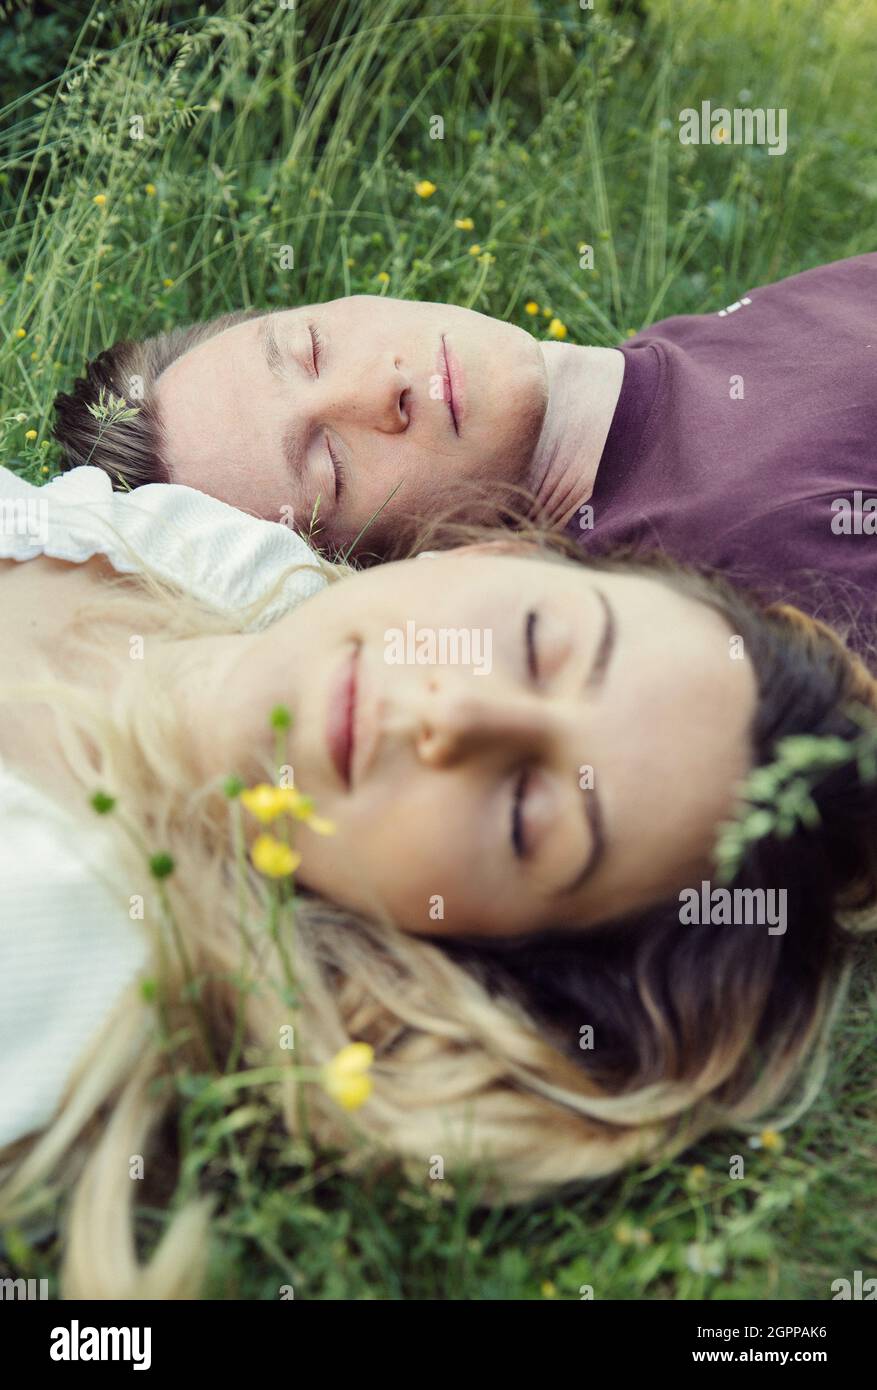 Austria, Vienna, giovane coppia con occhi chiusi giacendo sull'erba Foto Stock